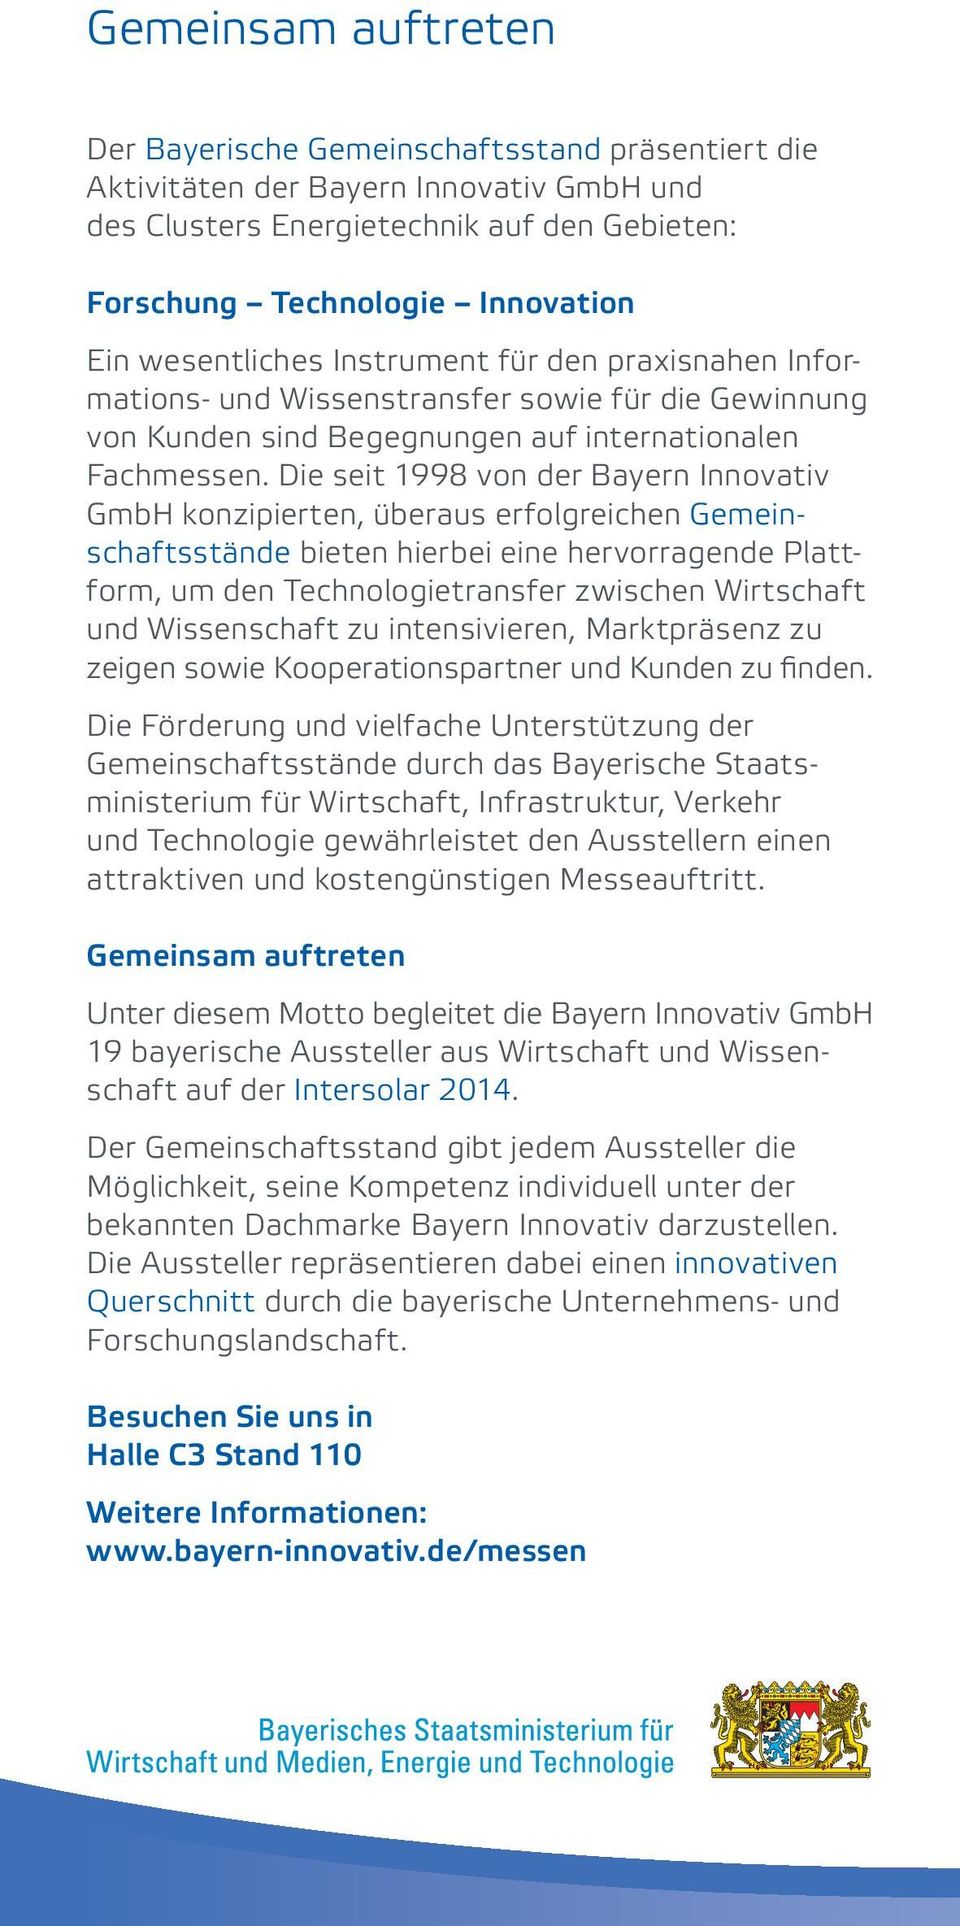 Die seit 1998 von der Bayern Innovativ GmbH konzipierten, überaus erfolgreichen Gemeinschaftsstände bieten hierbei eine hervorragende Plattform, um den Technologietransfer zwischen Wirtschaft und